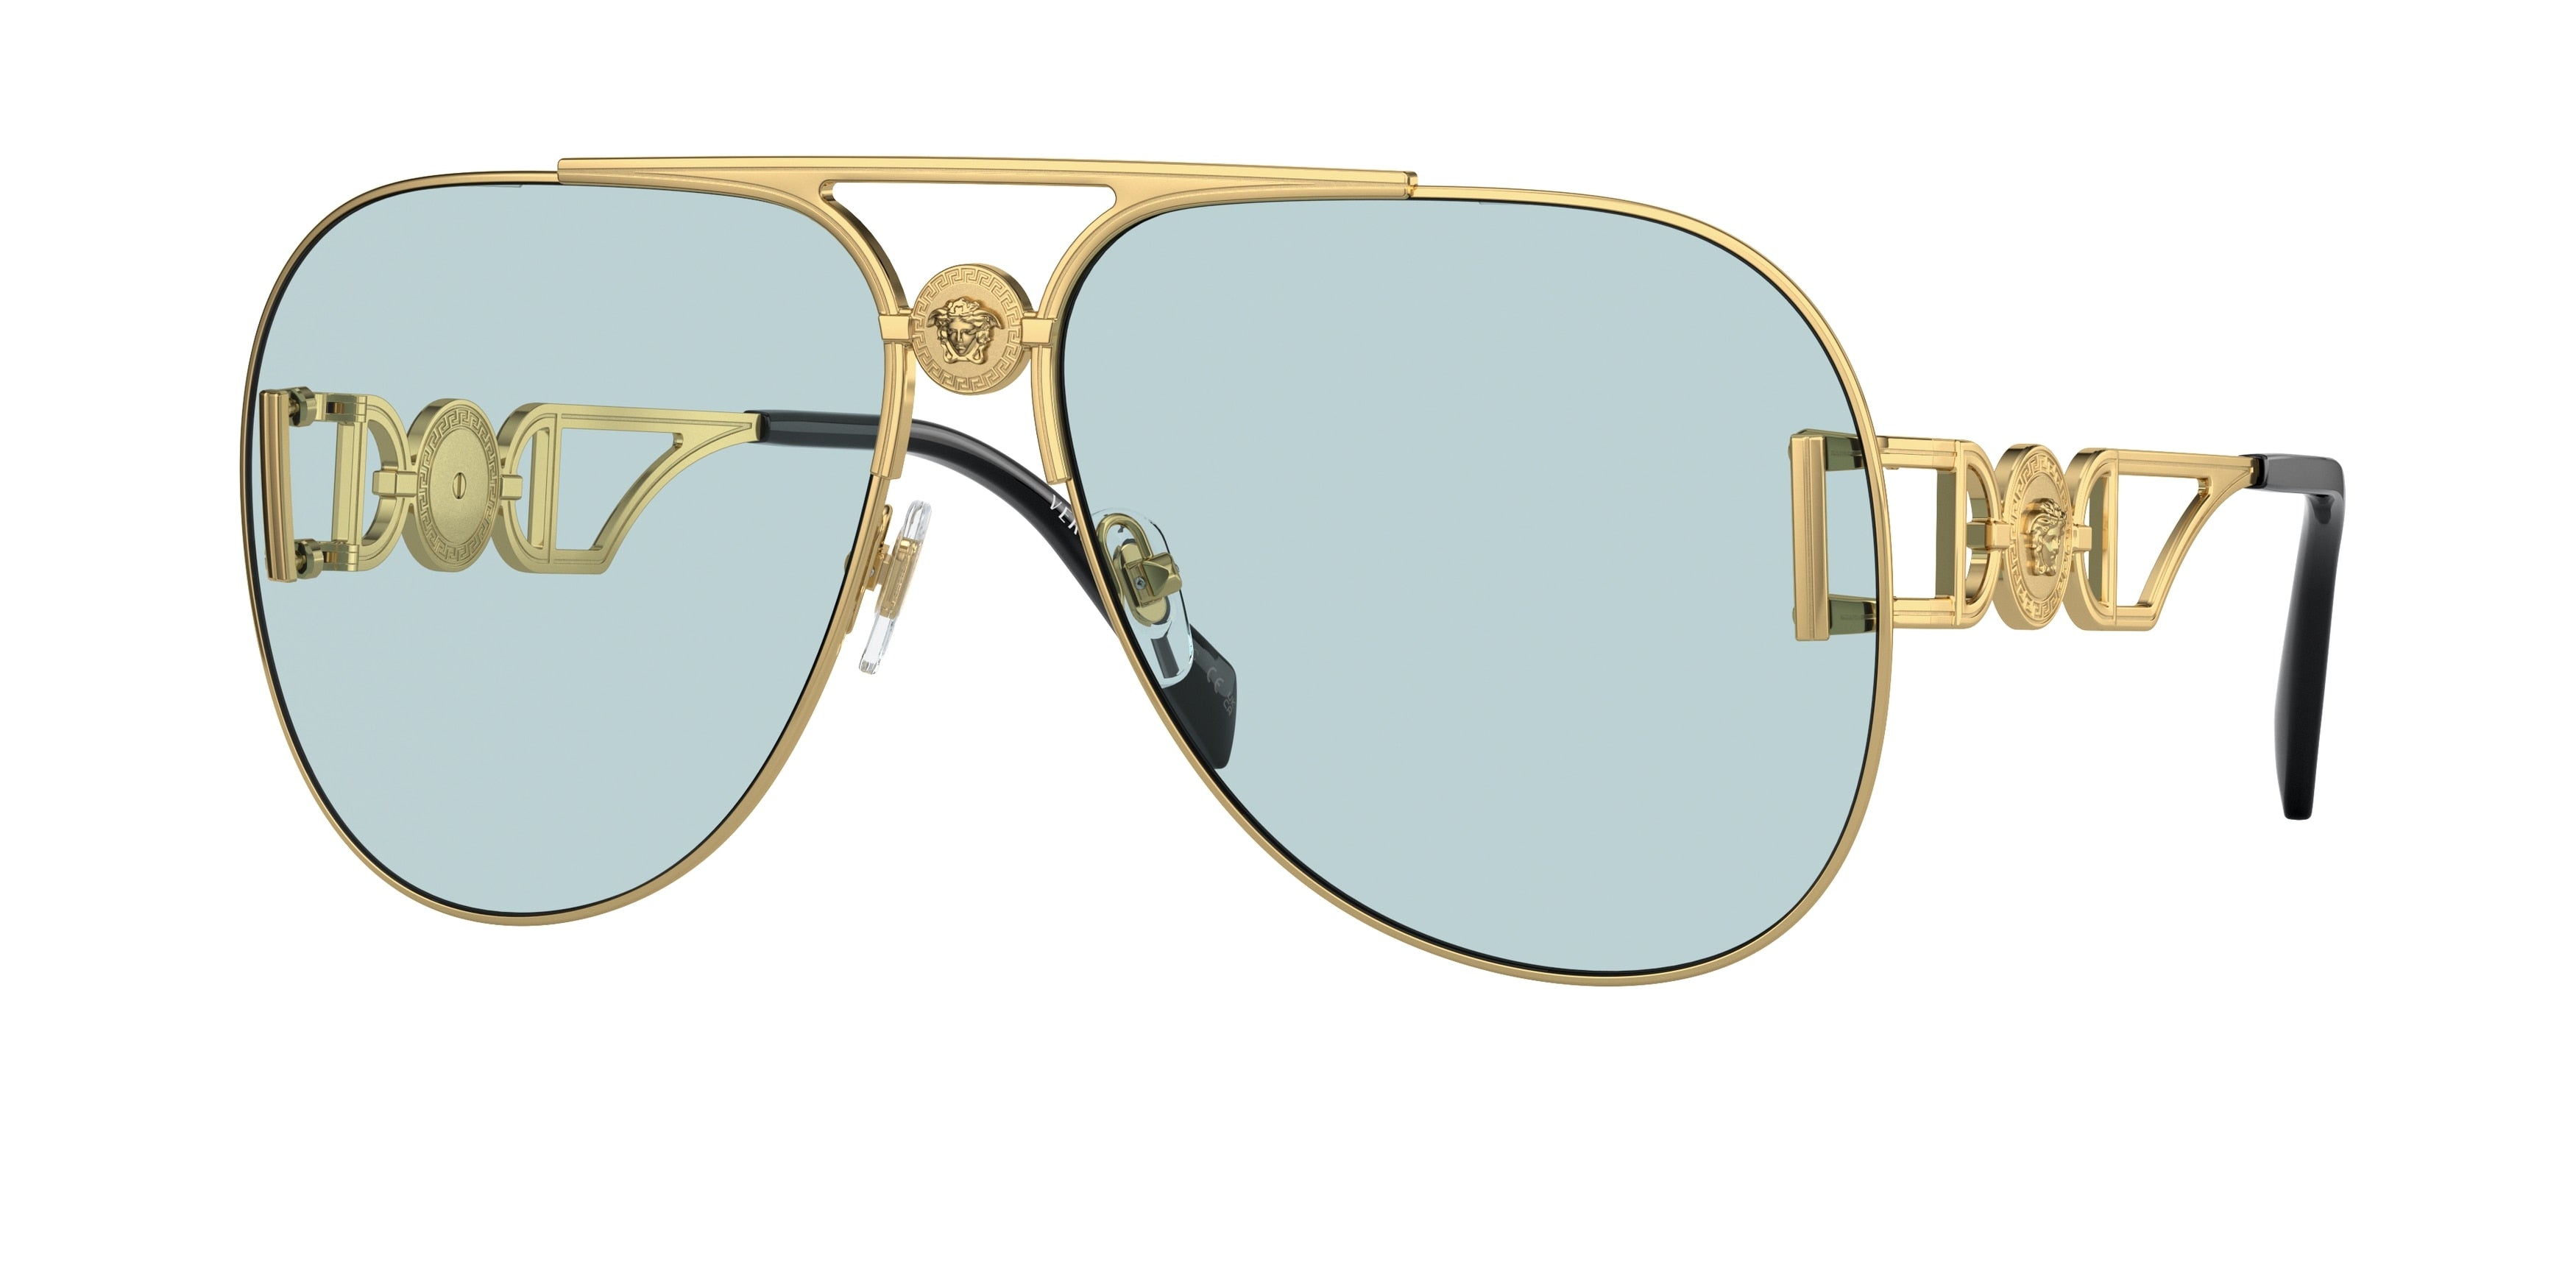 Versace VE2255 Pilot Sunglasses  1002/1-Gold 63-145-13 - Color Map Gold